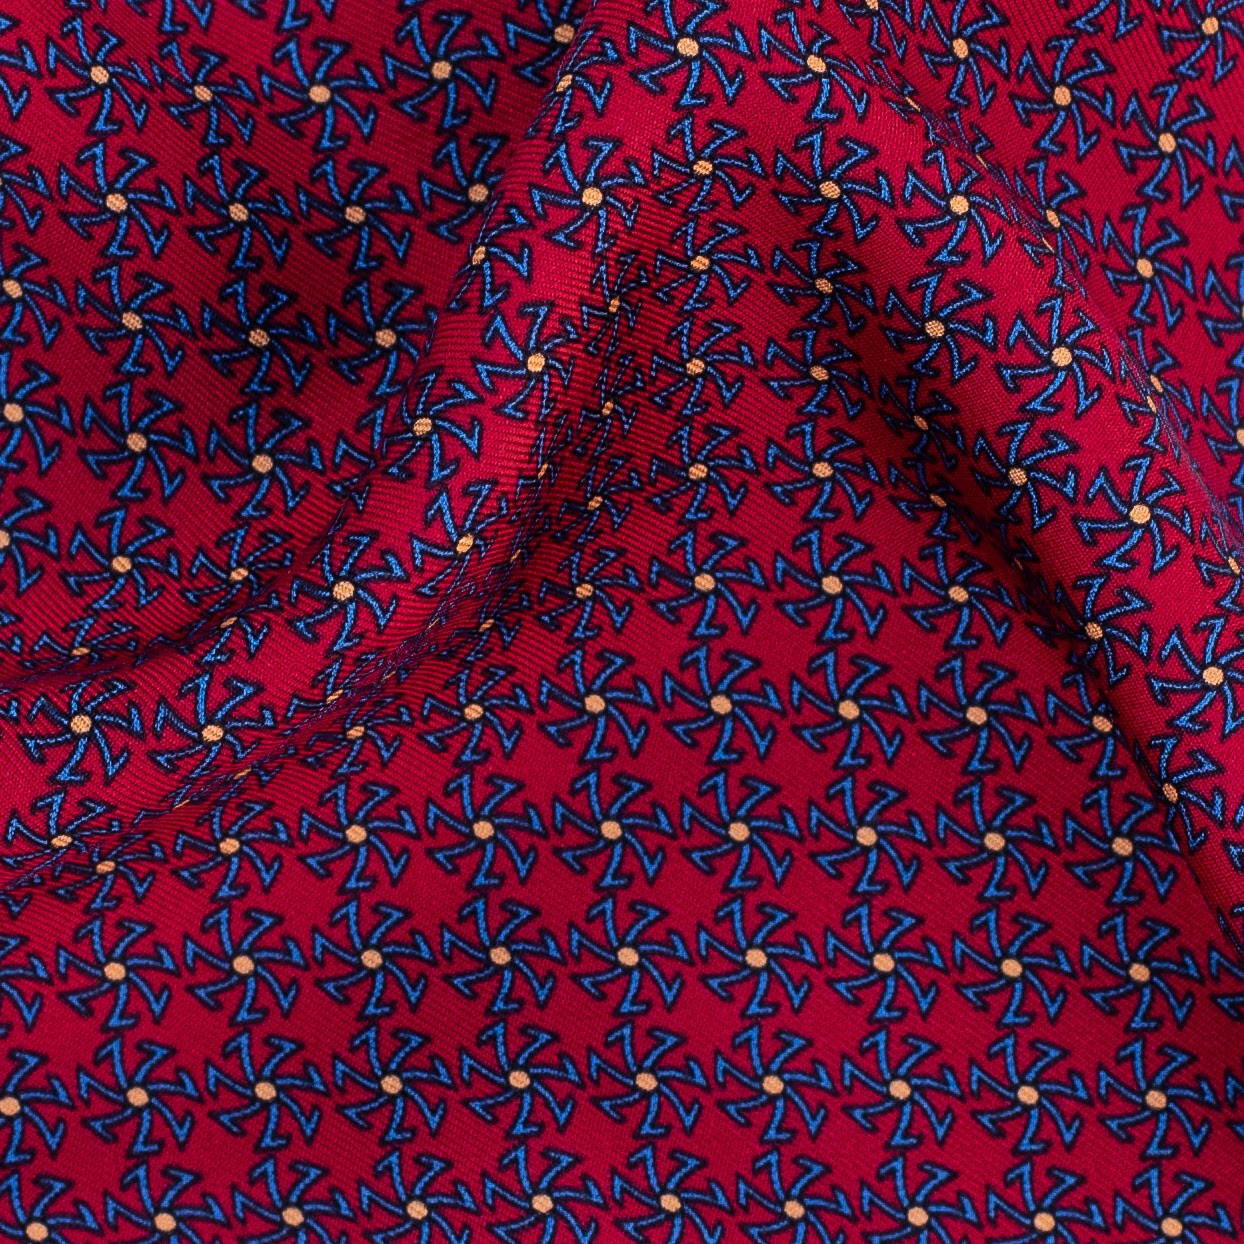 Rebel Premium Silk Neckties - Sette Star Printed - AAA Italian Silk